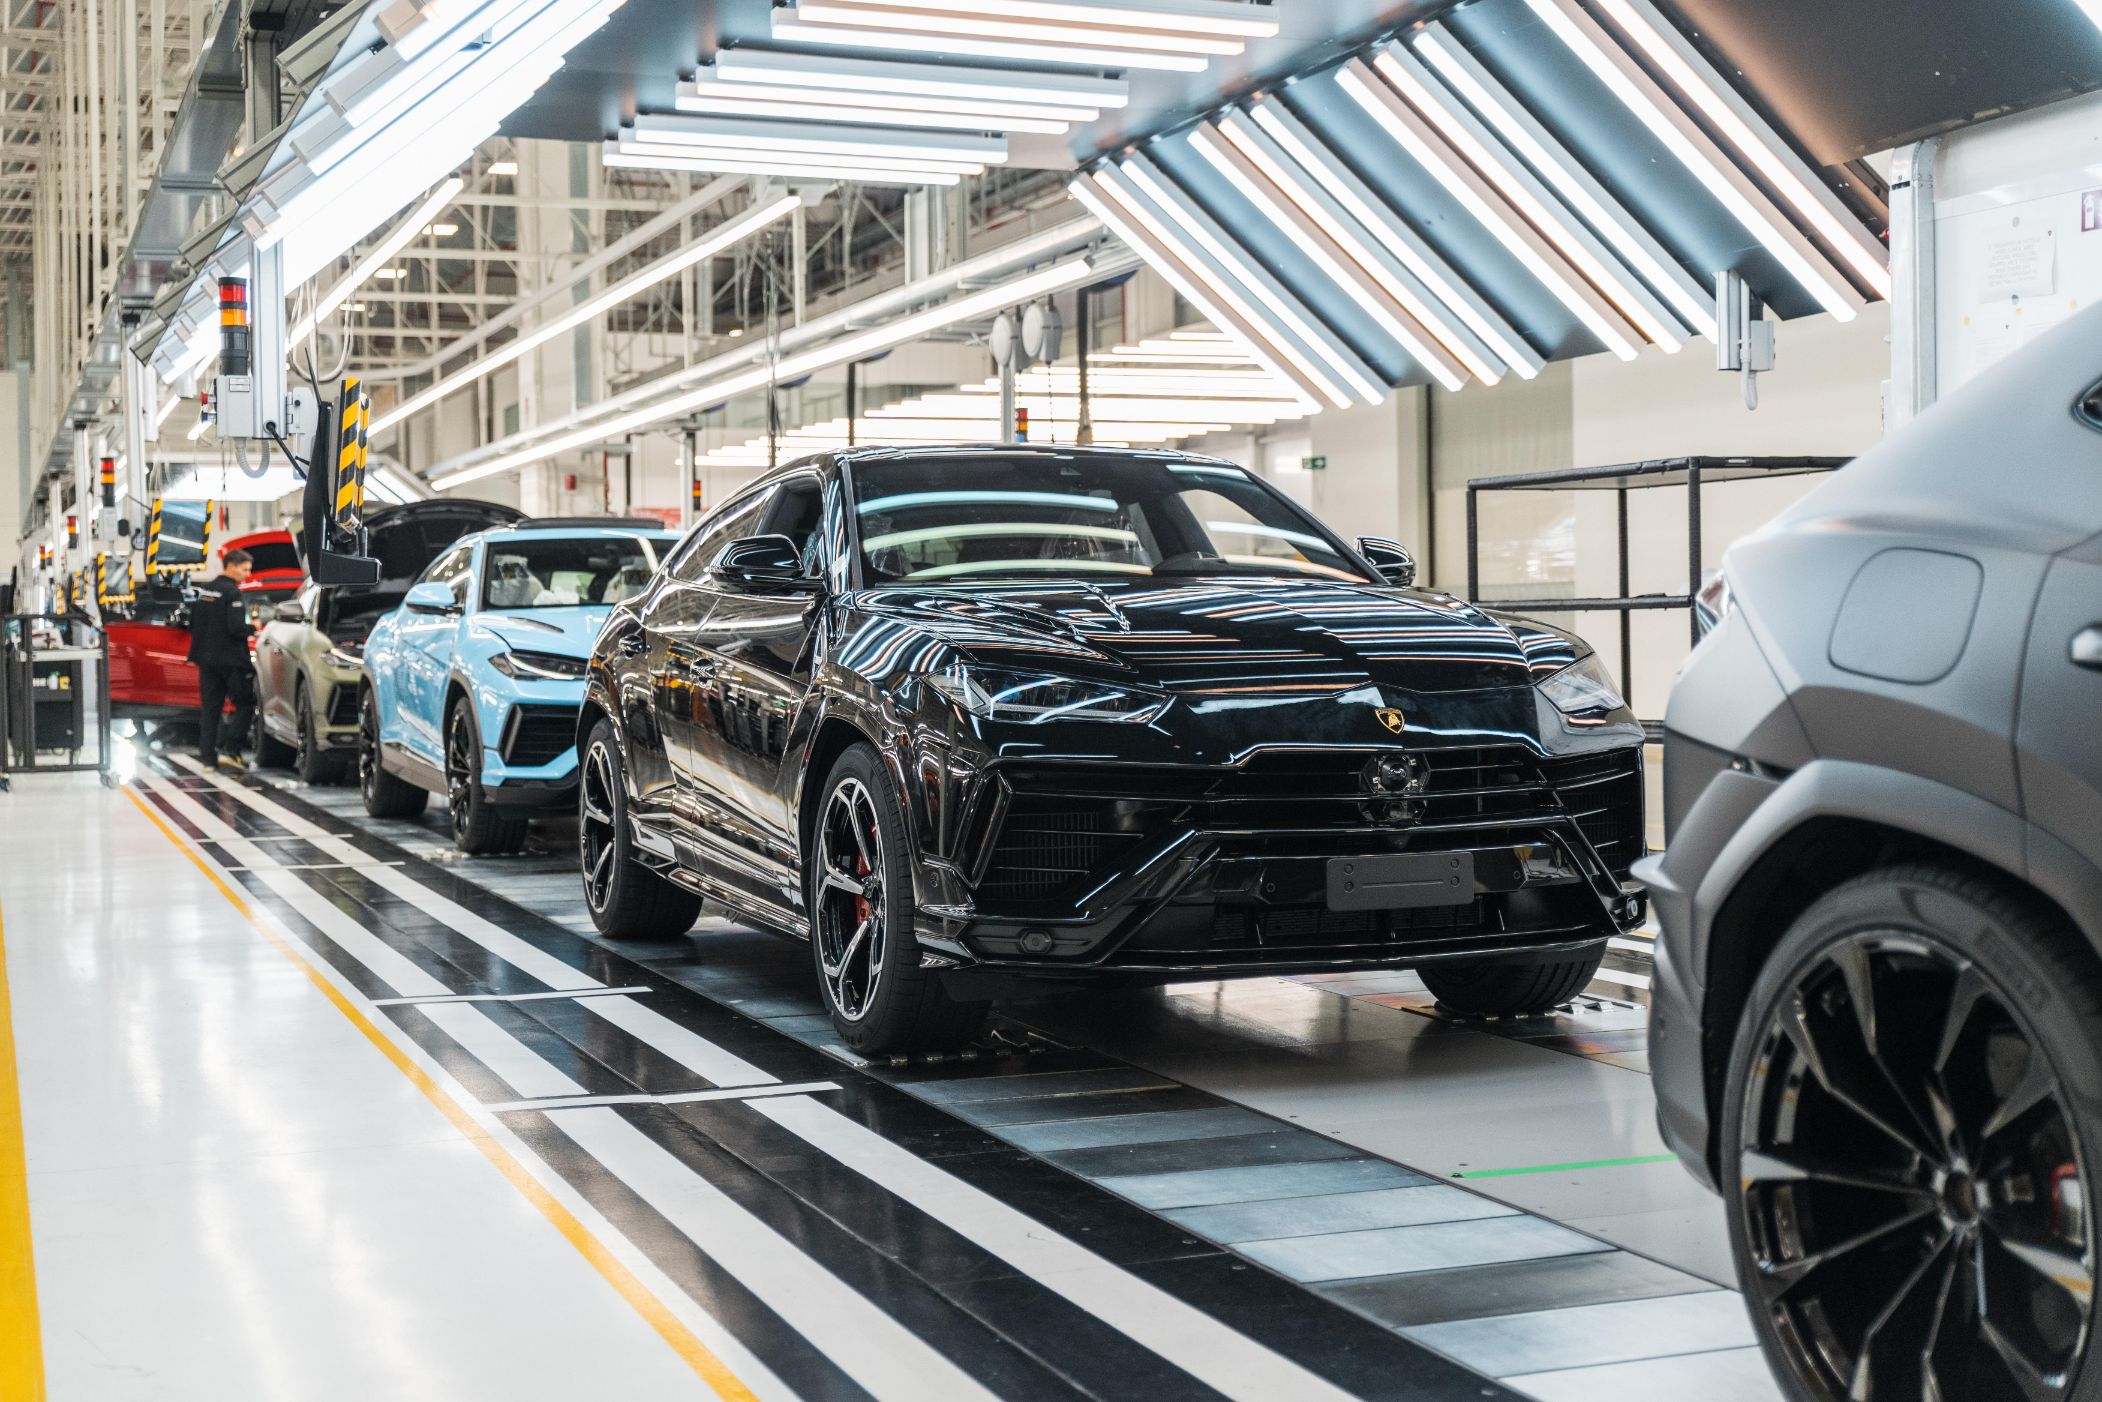 Urus Production 5 Automobili Lamborghini   Hành trình 60 năm phát triển của nhà máy và những tên tuổi siêu xe 